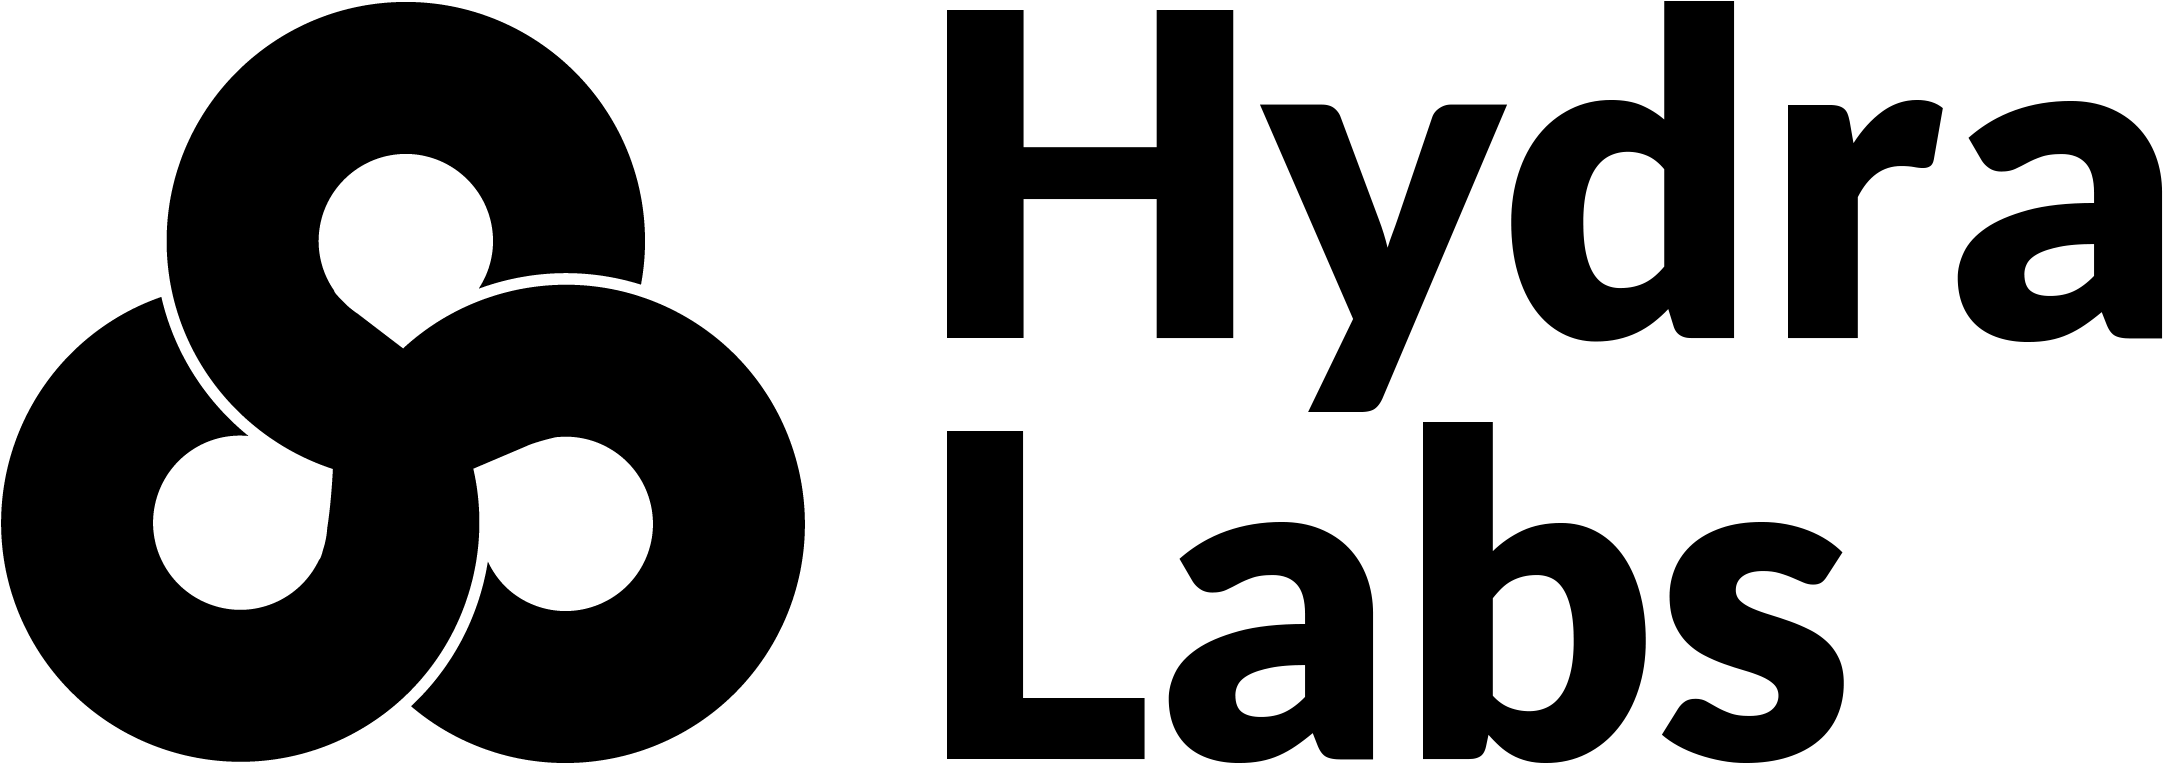 Marvel Hydra Logo PNG высококачественный образ